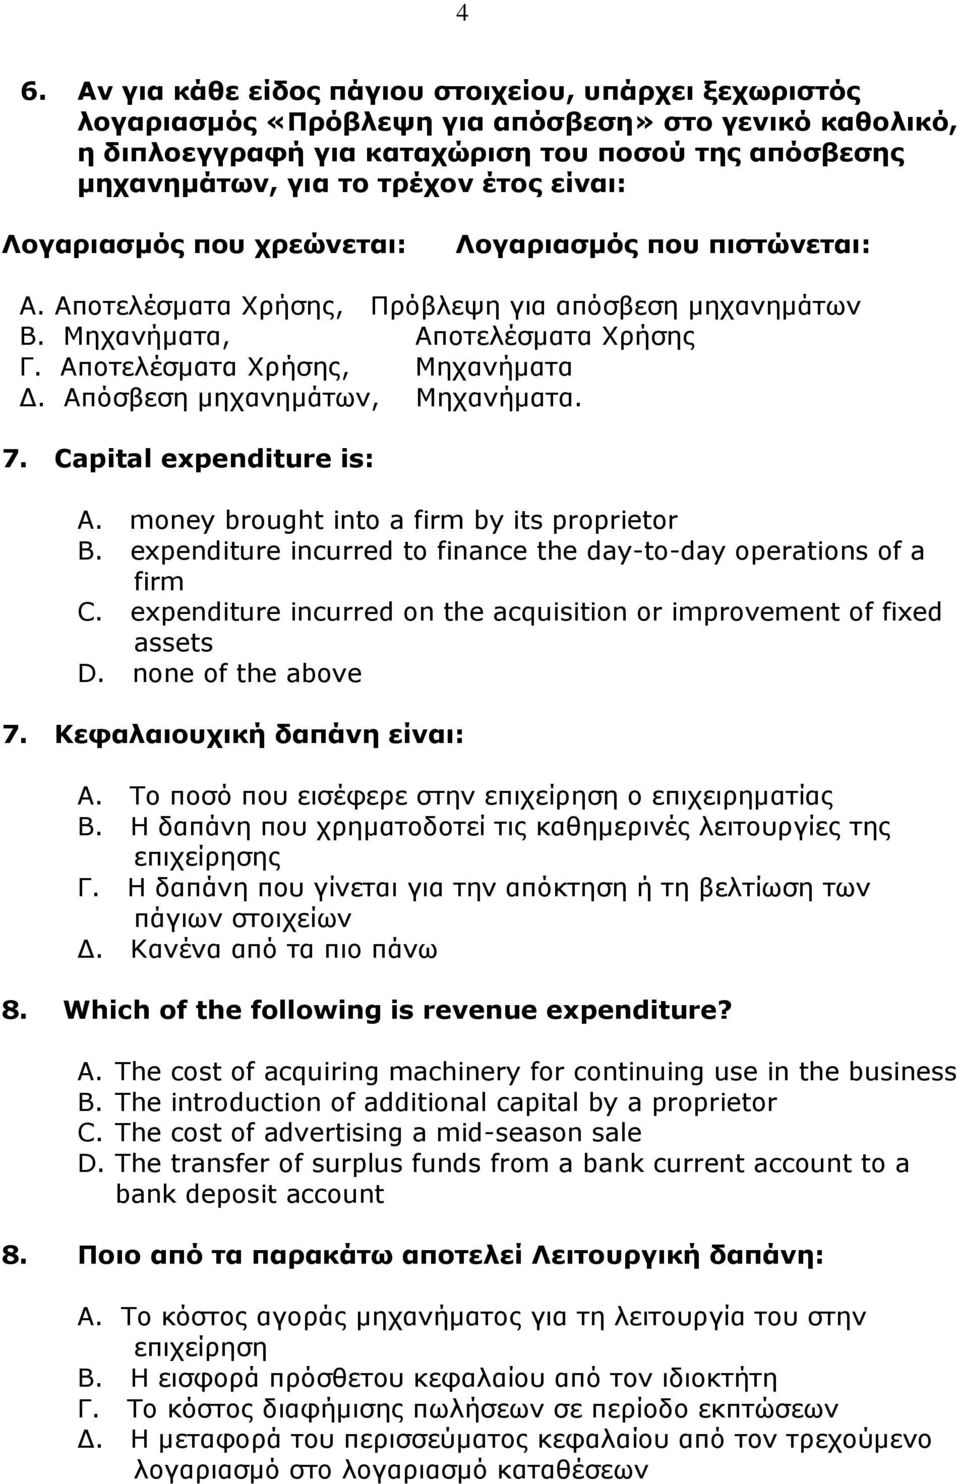 Απόσβεση μηχανημάτων, Μηχανήματα. 7. Capital expenditure is:. money brought into a firm by its proprietor. expenditure incurred to finance the day-to-day operations of a firm C.